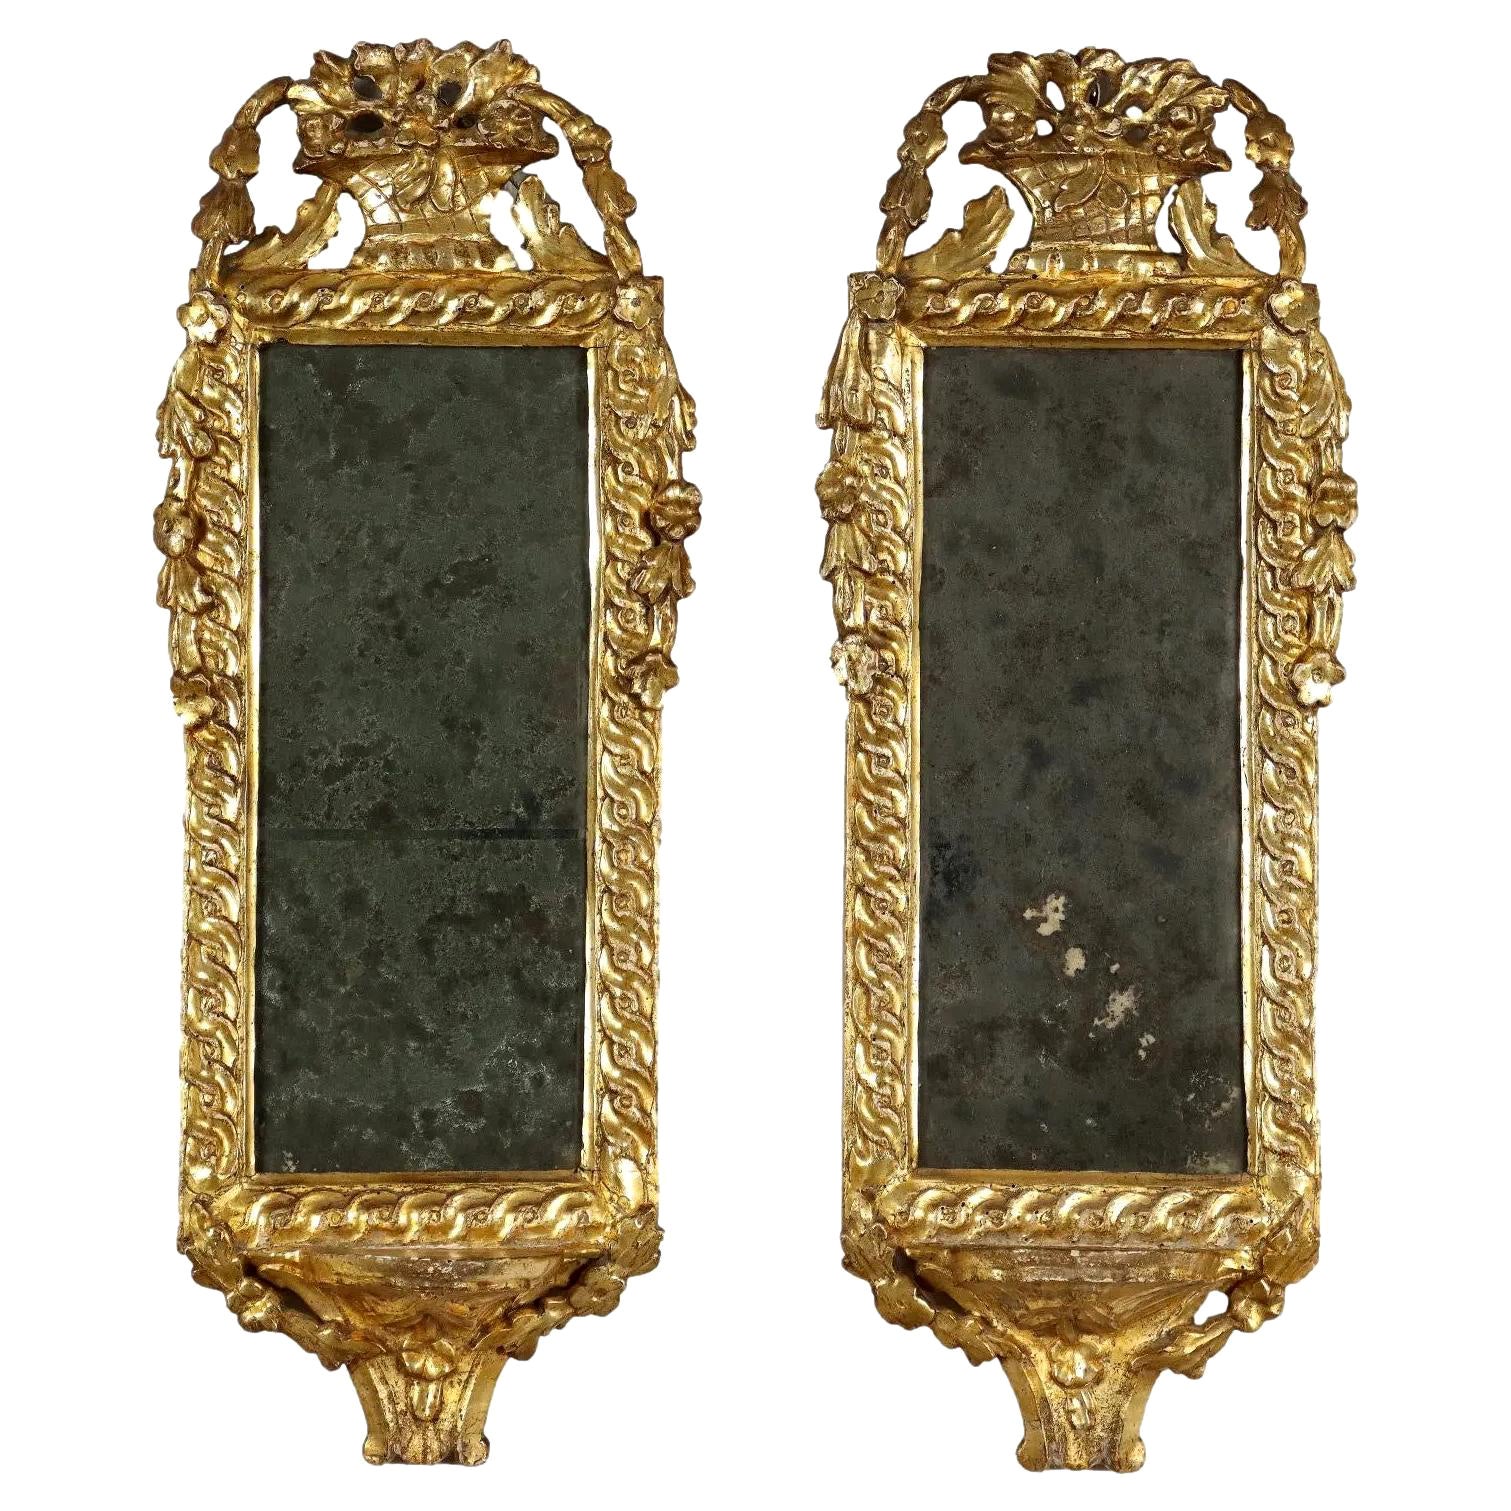 Zwei italienische neoklassische Spiegel aus Giltwood - CIRCA 1780